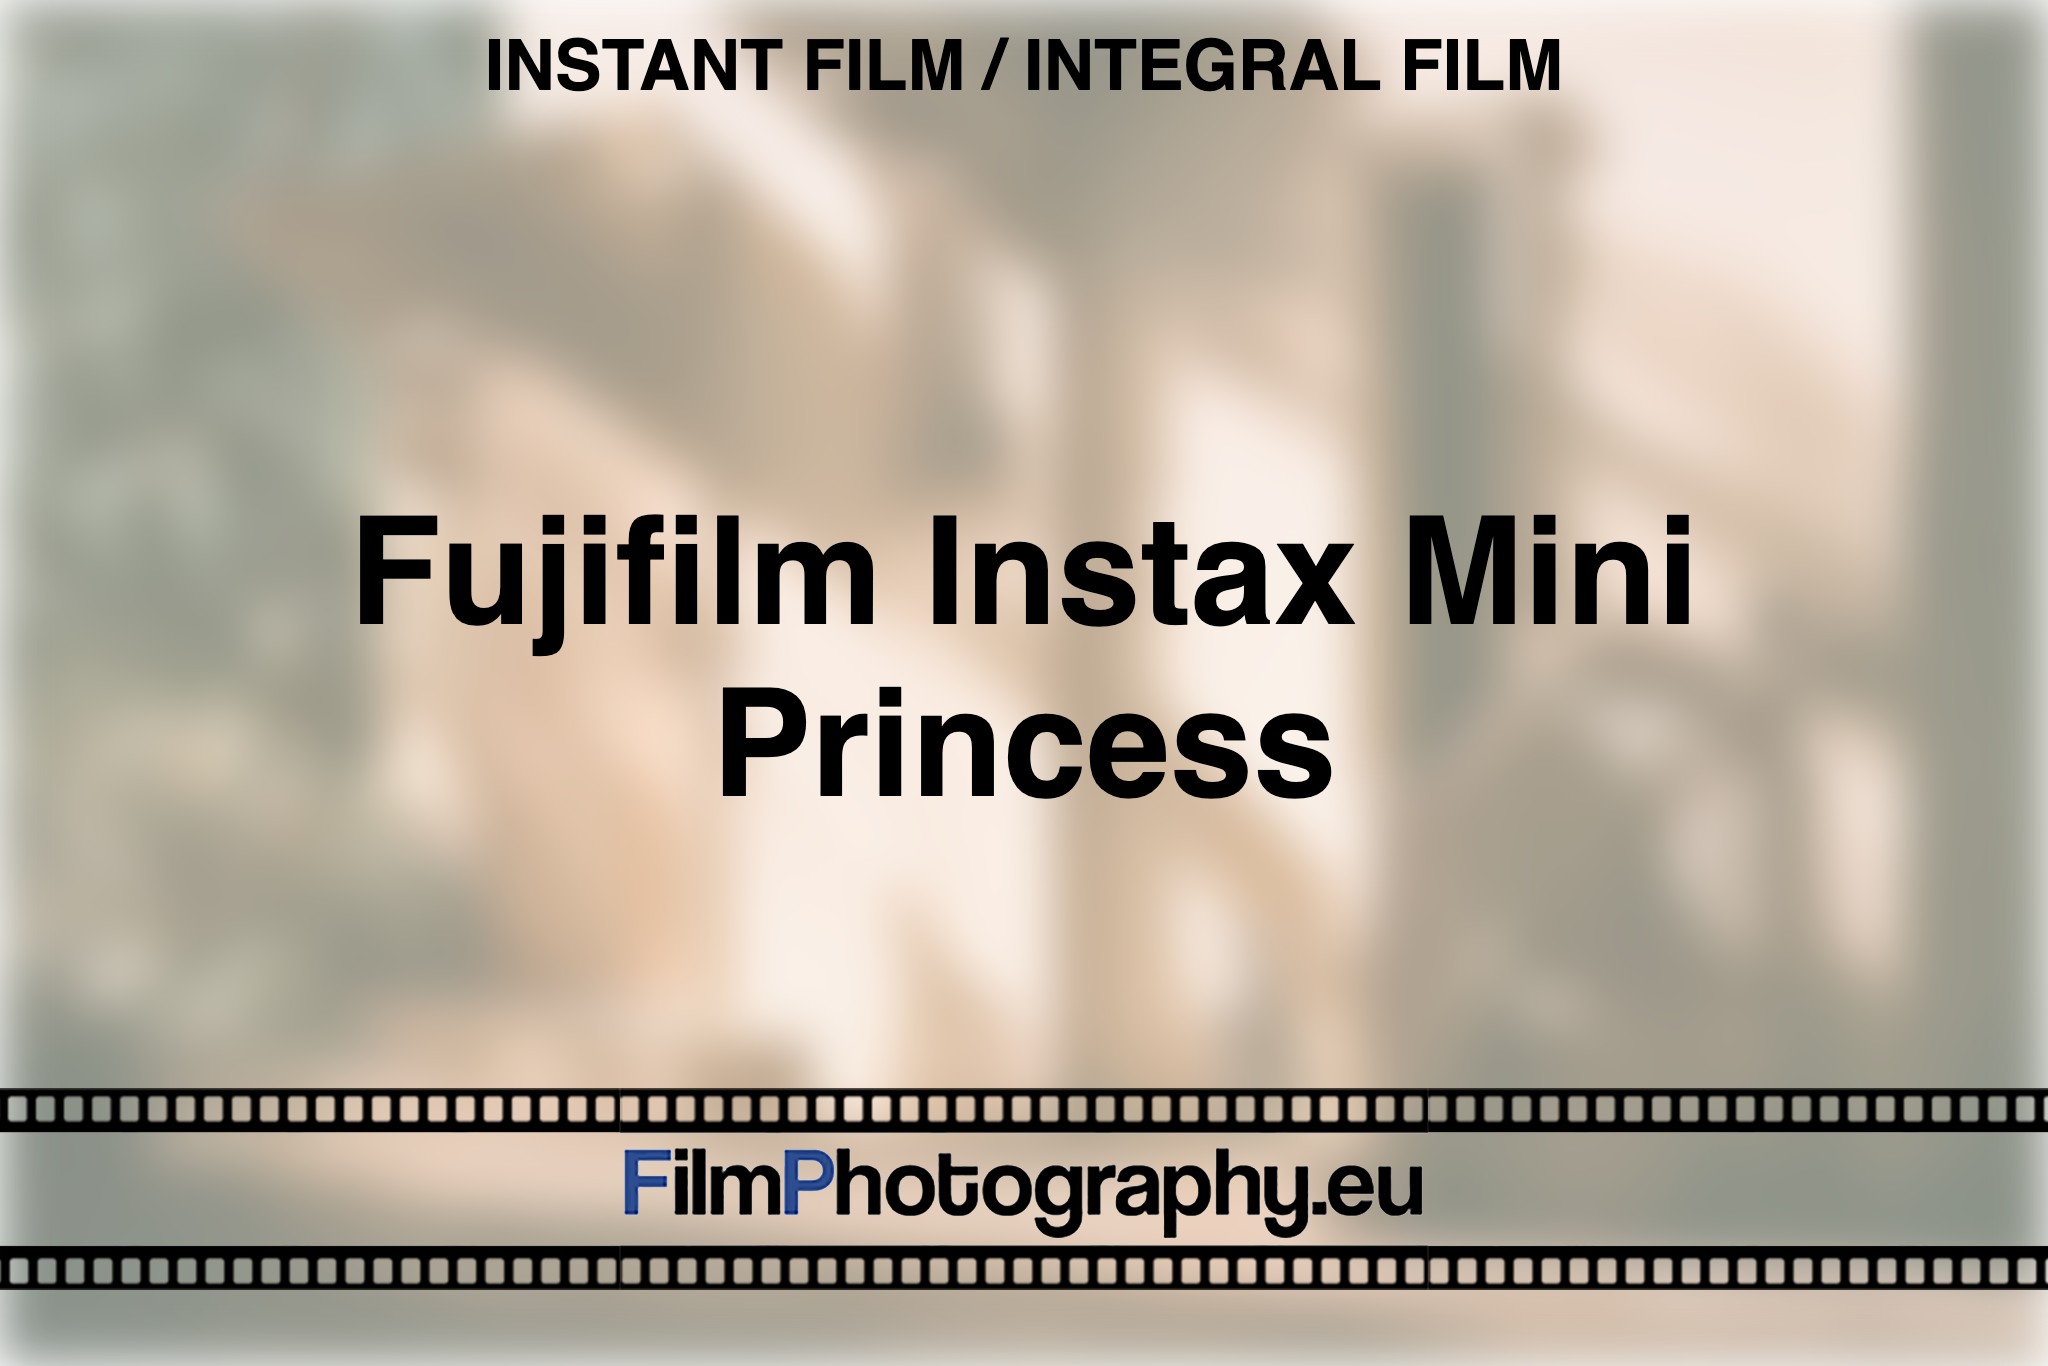 fujifilm-instax-mini-princess-instant-film-integral-film-bnv